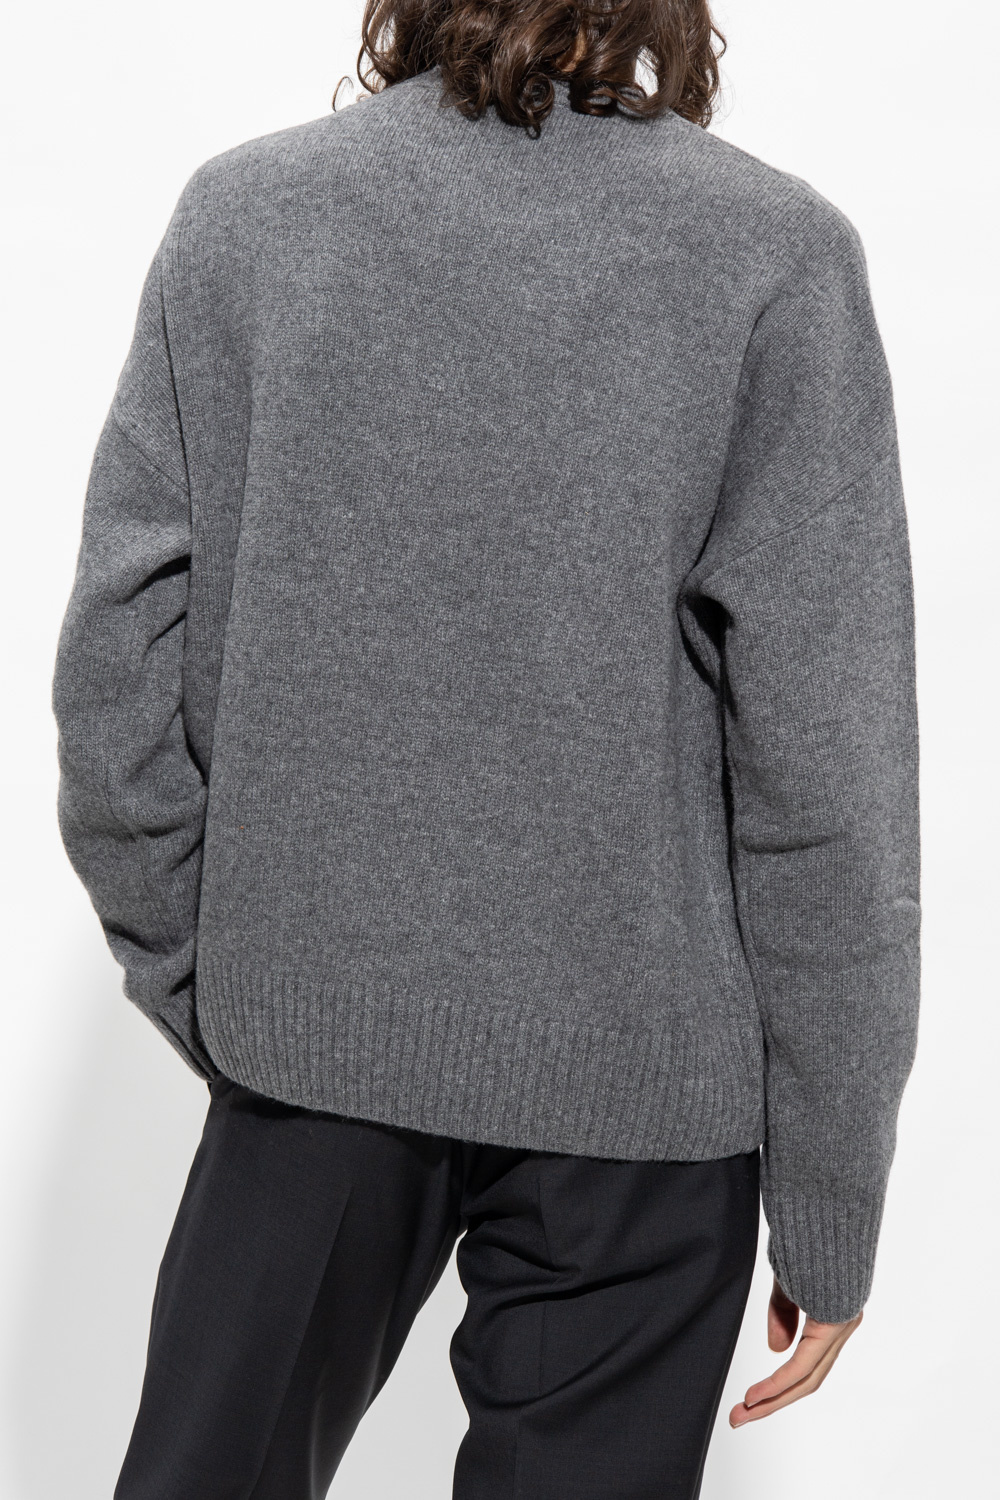 Ami Alexandre Mattiussi contrast-collar crewneck sweater White